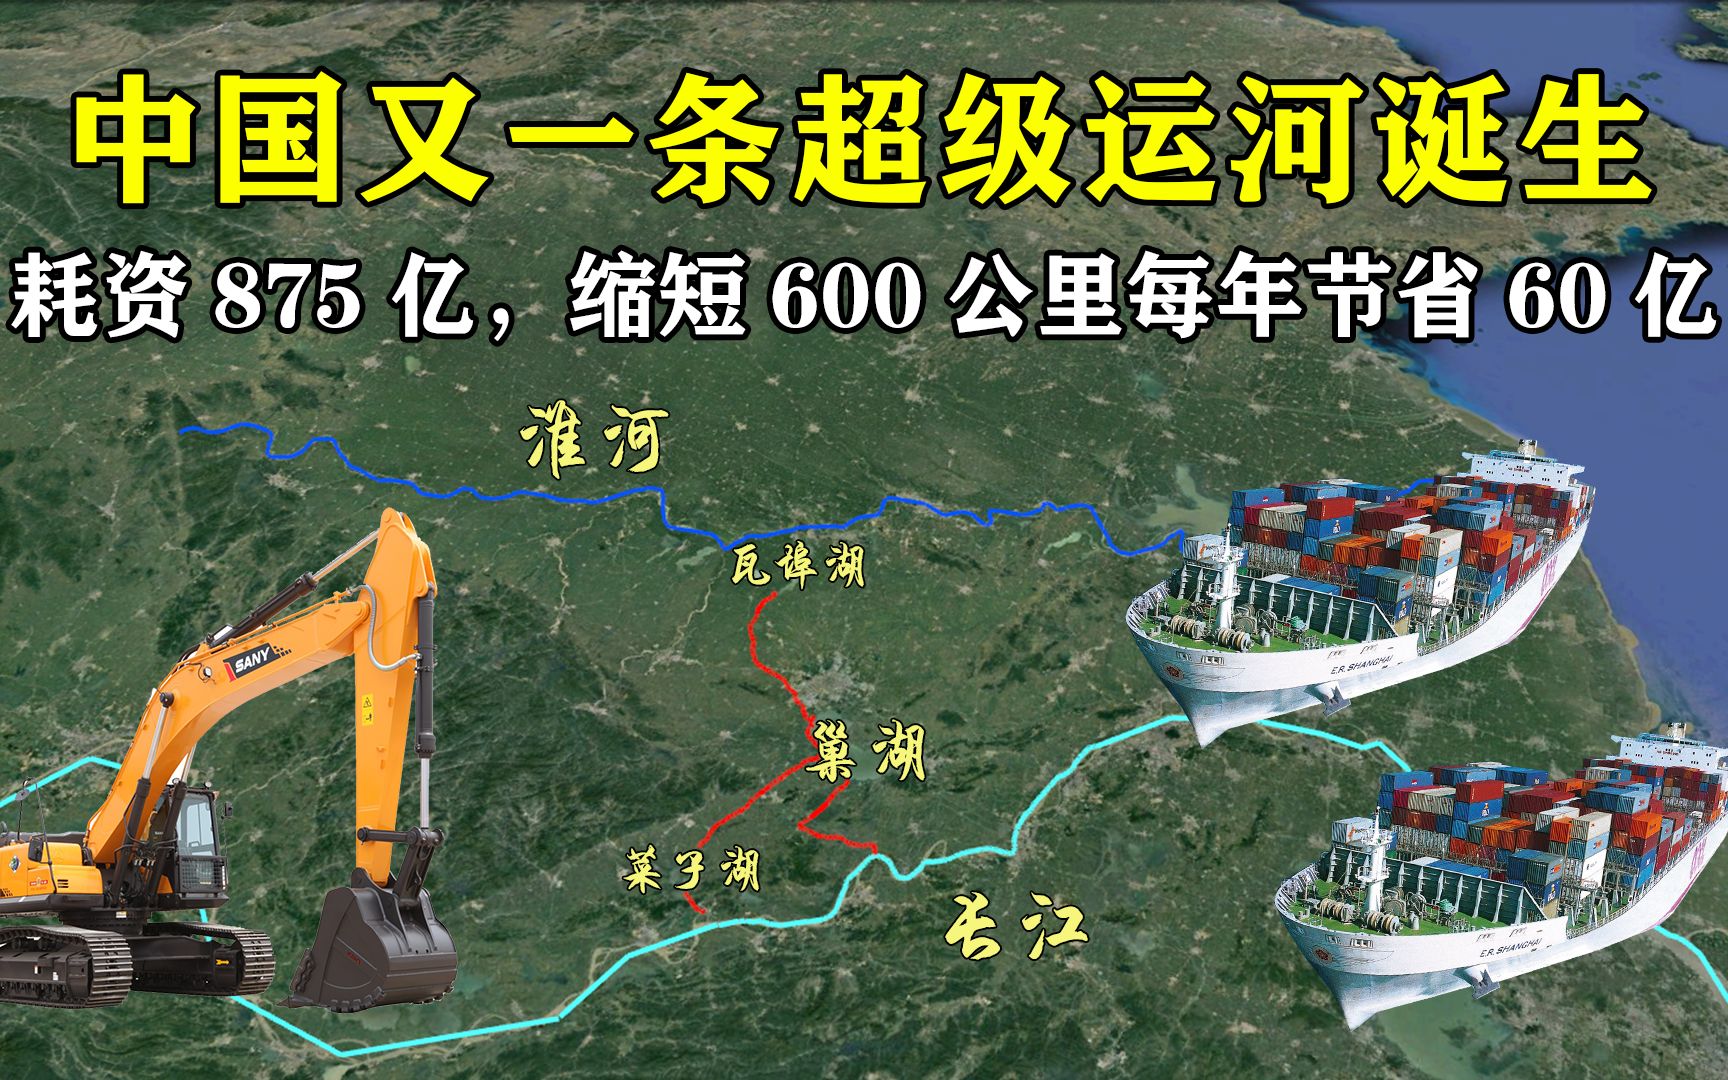 耗资875亿，中国第二条超级运河完工，缩短600公里每年节省60亿